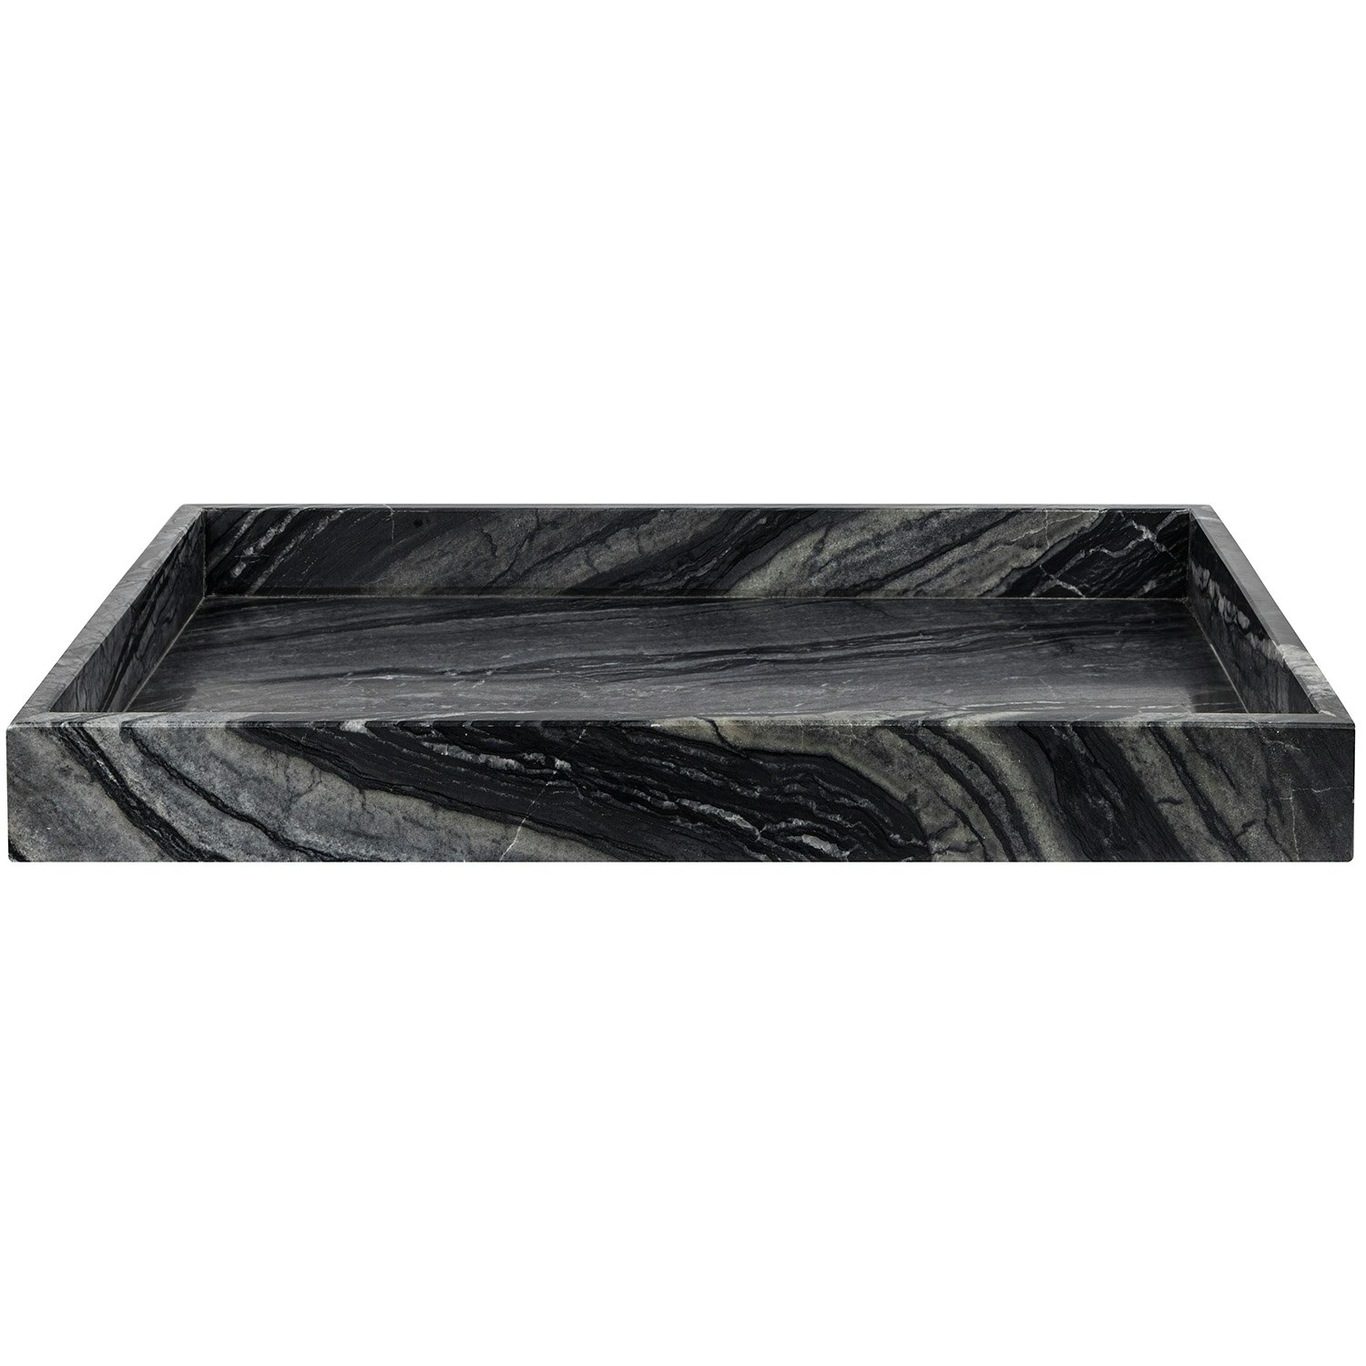 MARBLE Tray 30x40 cm, Black / Grey